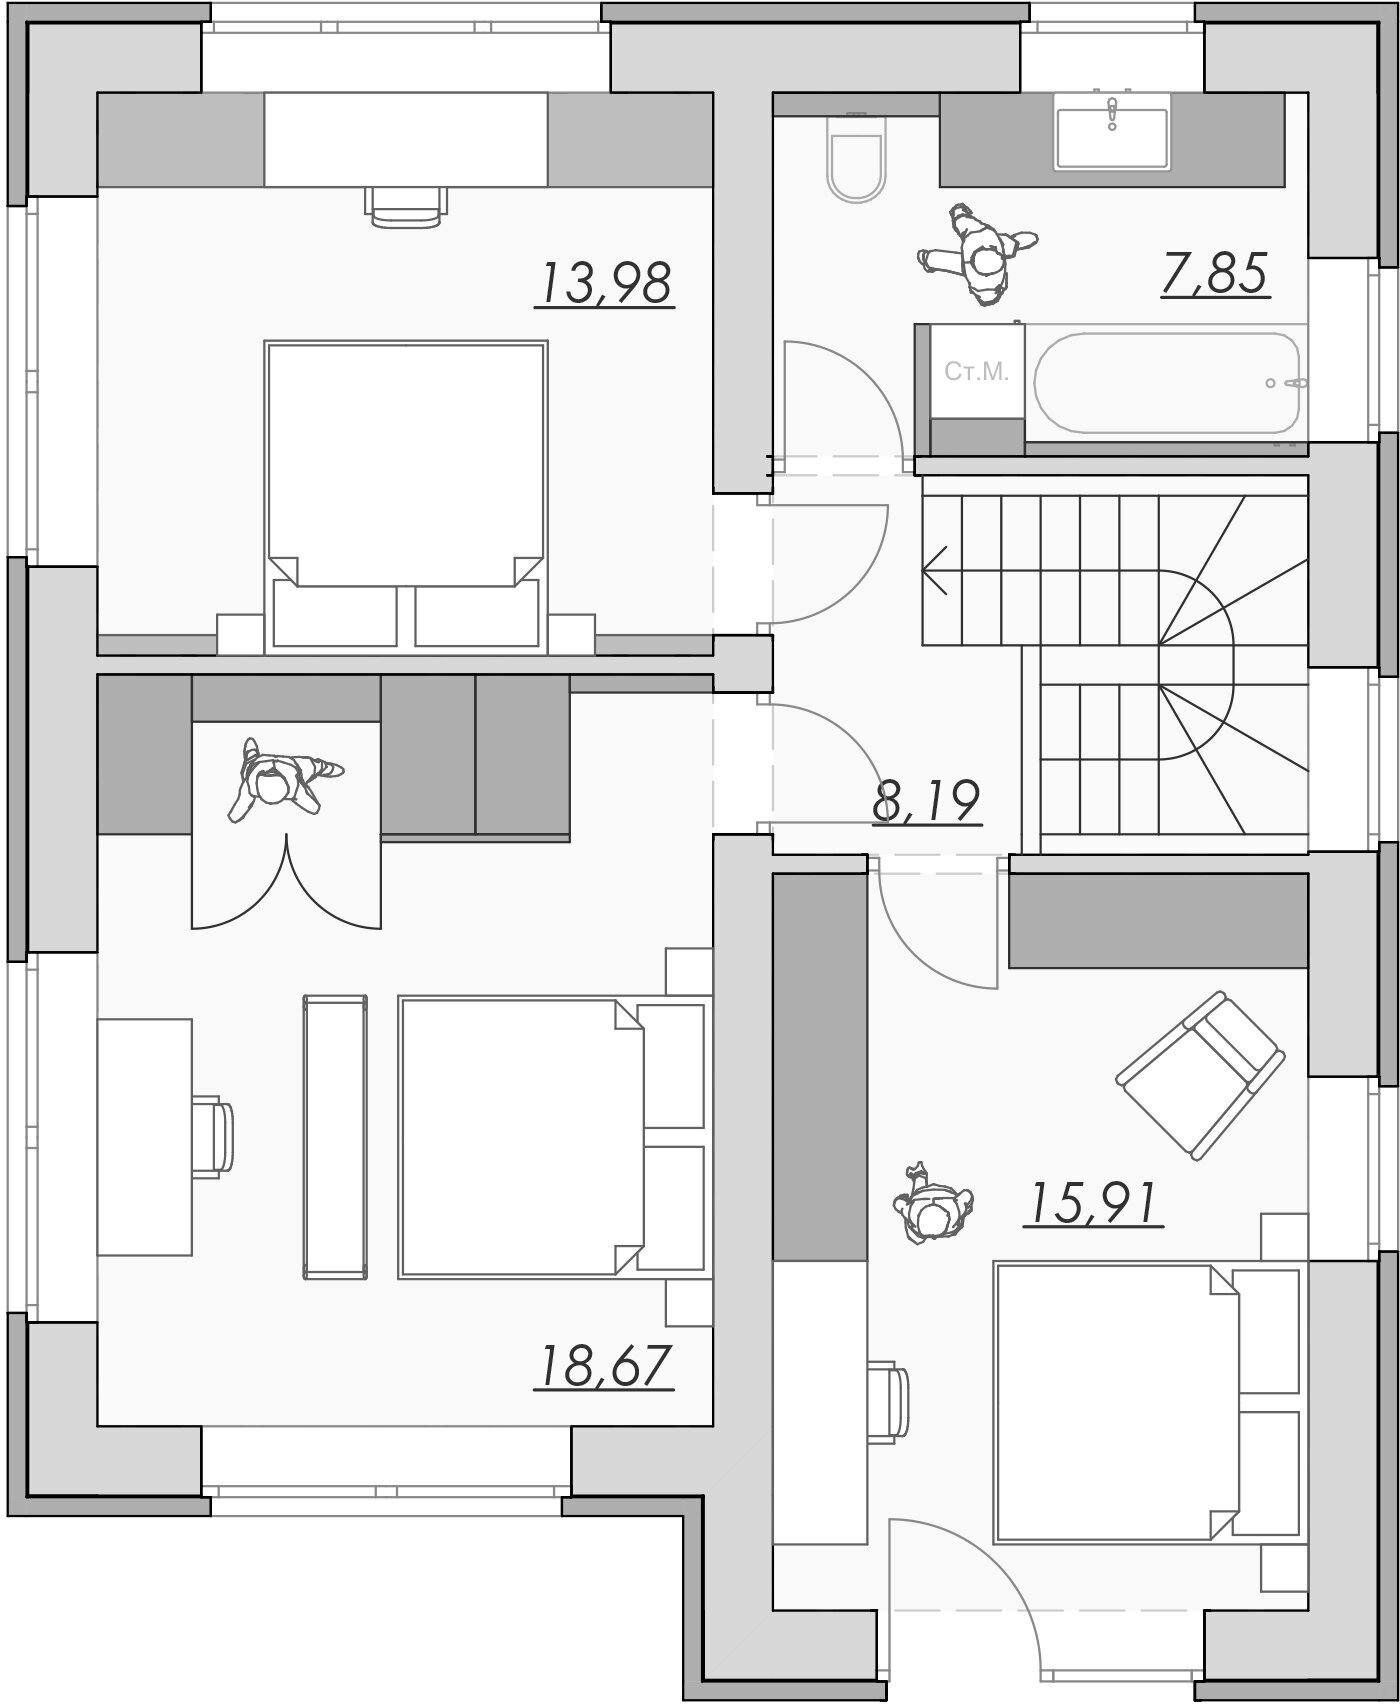 Проект двухэтажного дома в стиле Райта 135 м2 с 3 спальнями, общей зоной кухни с гостиной, отдельной котельной и террасой на заднем дворике - фотография № 2